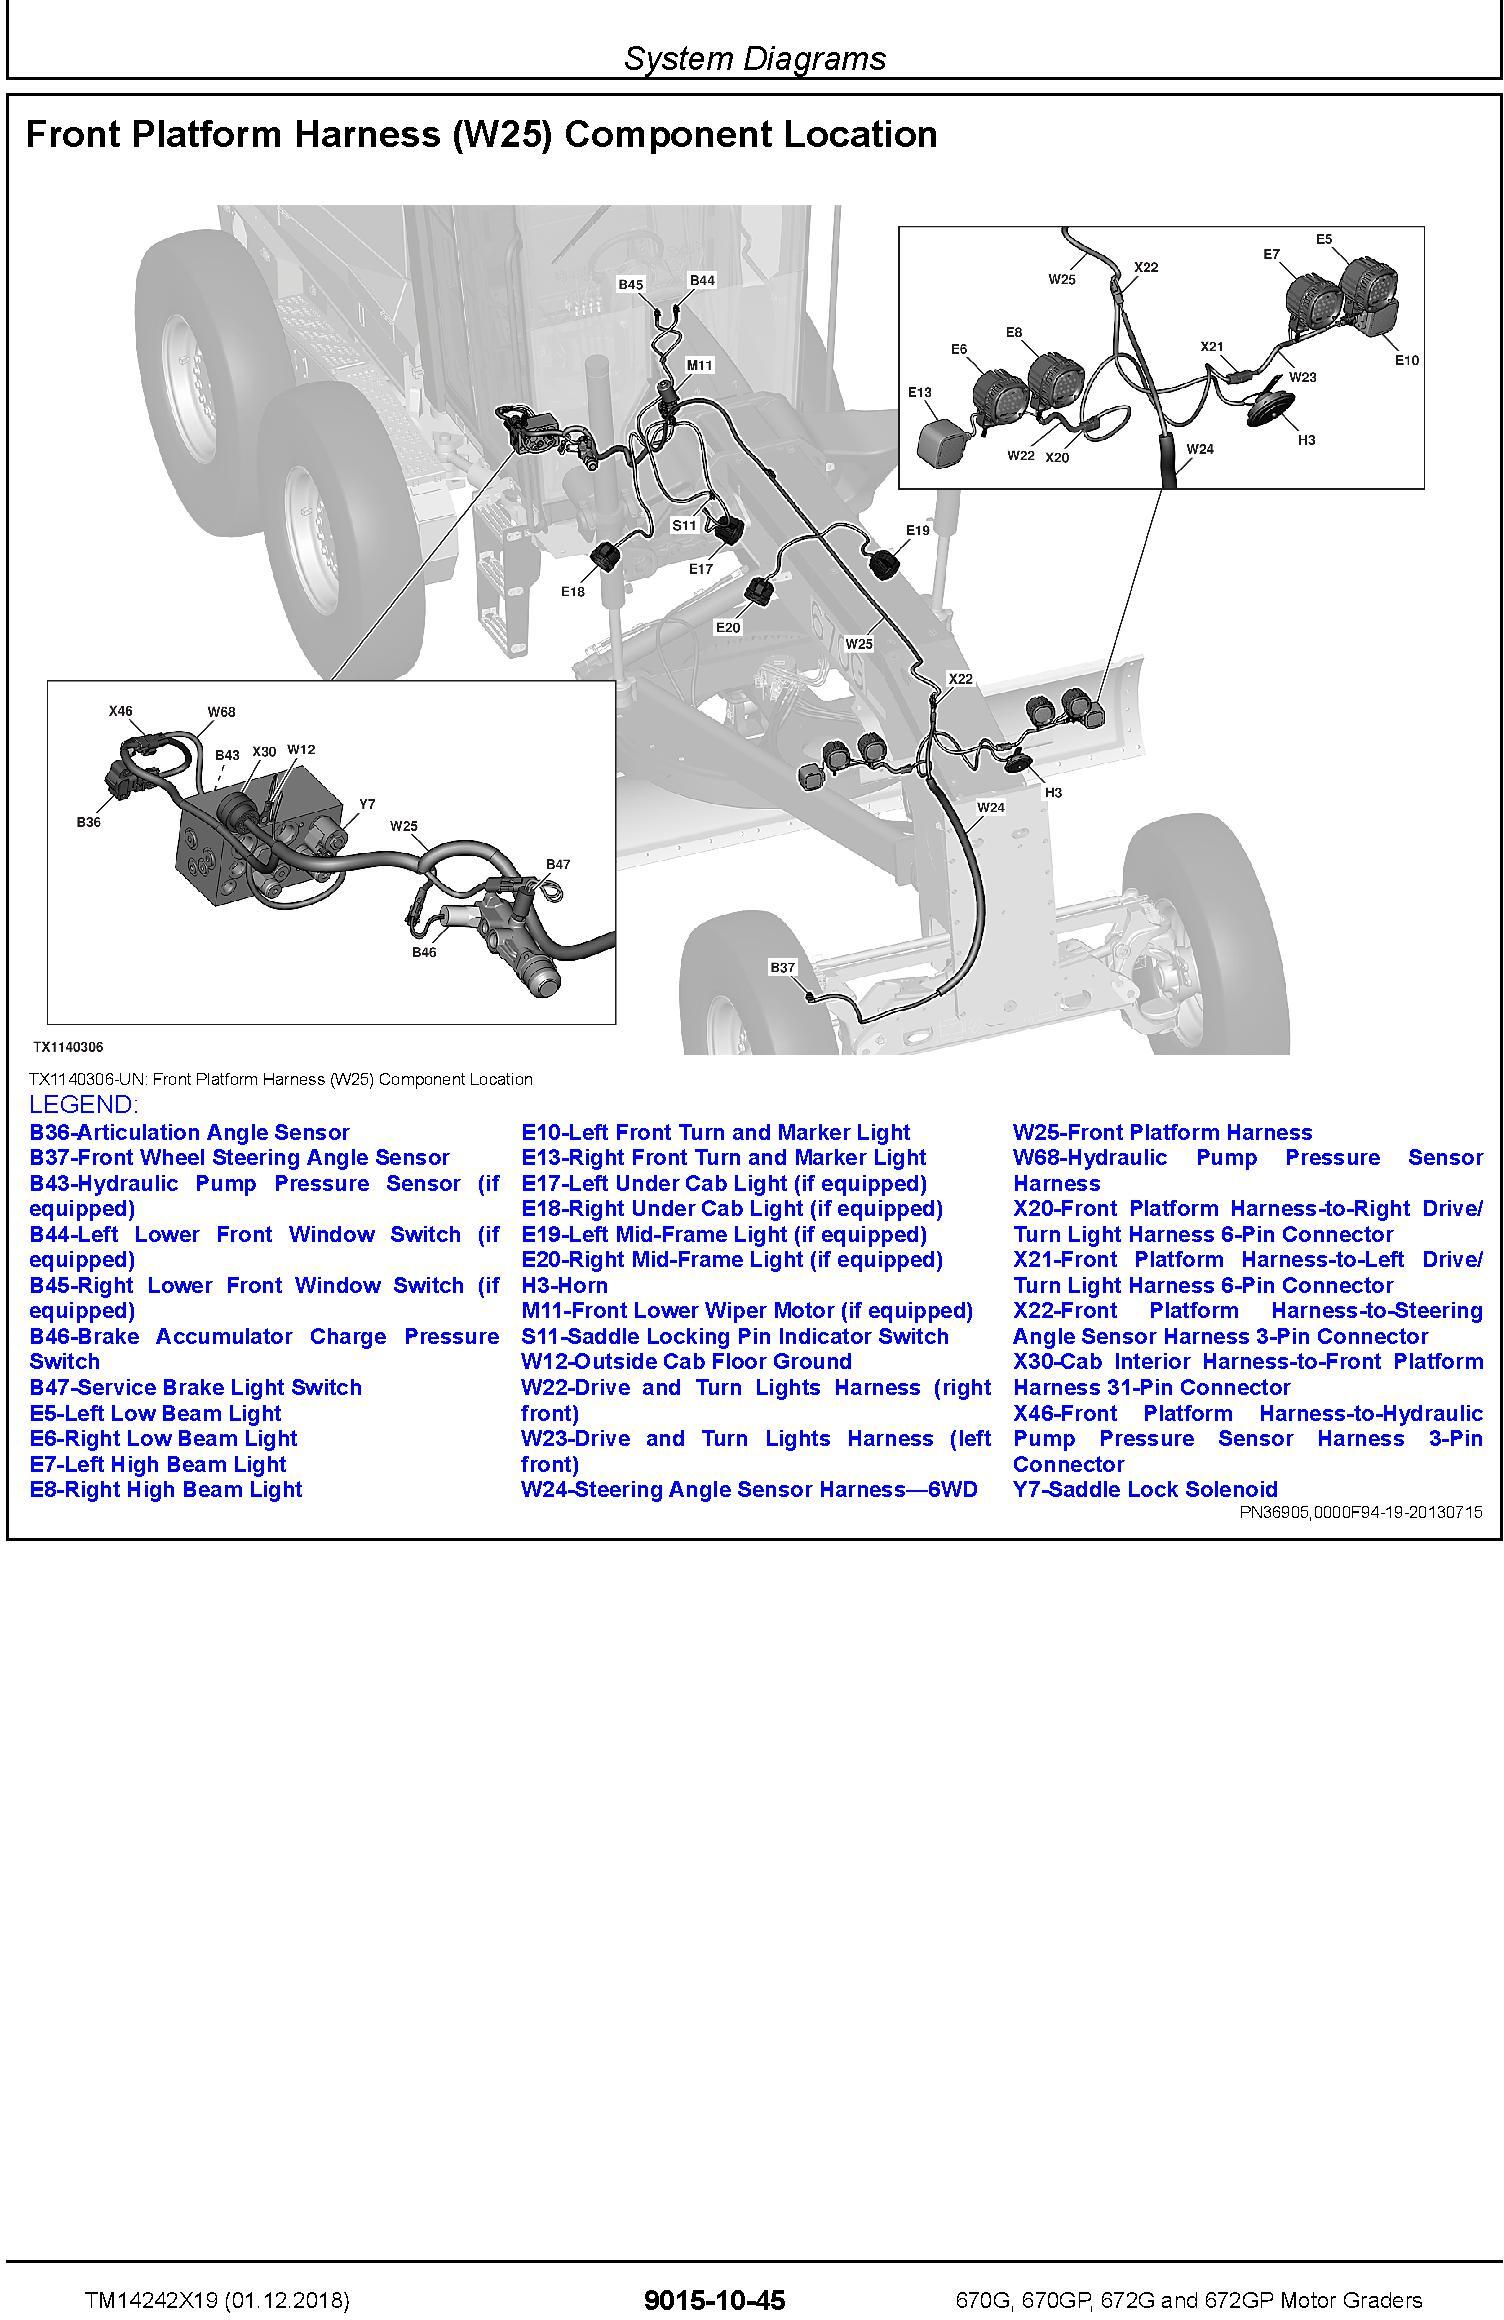 John Deere 670G,670GP, 672G,672GP (SN.F680878-,L700954) Motor Graders Diagnostic Manual (TM14242X19) - 1